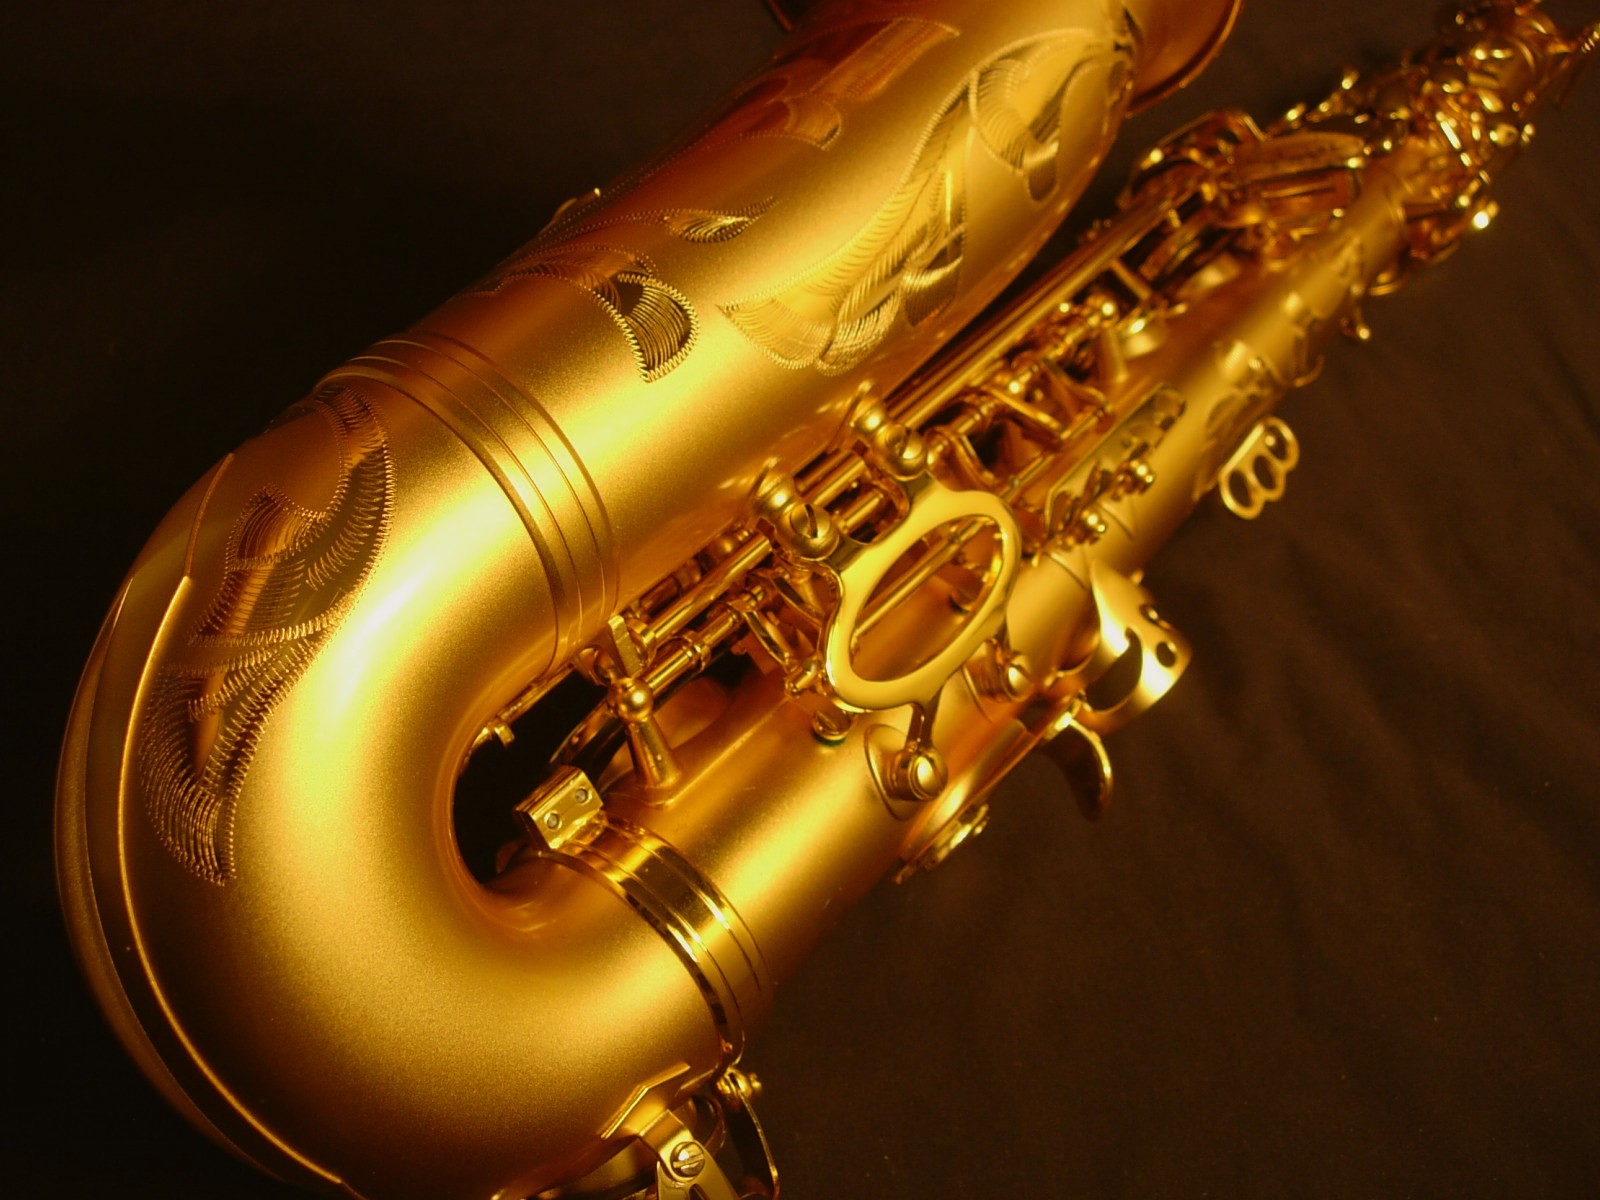 hd saxophon wallpaper,blechblasinstrument,musikinstrument,musik ,baritonsaxophon,saxophon